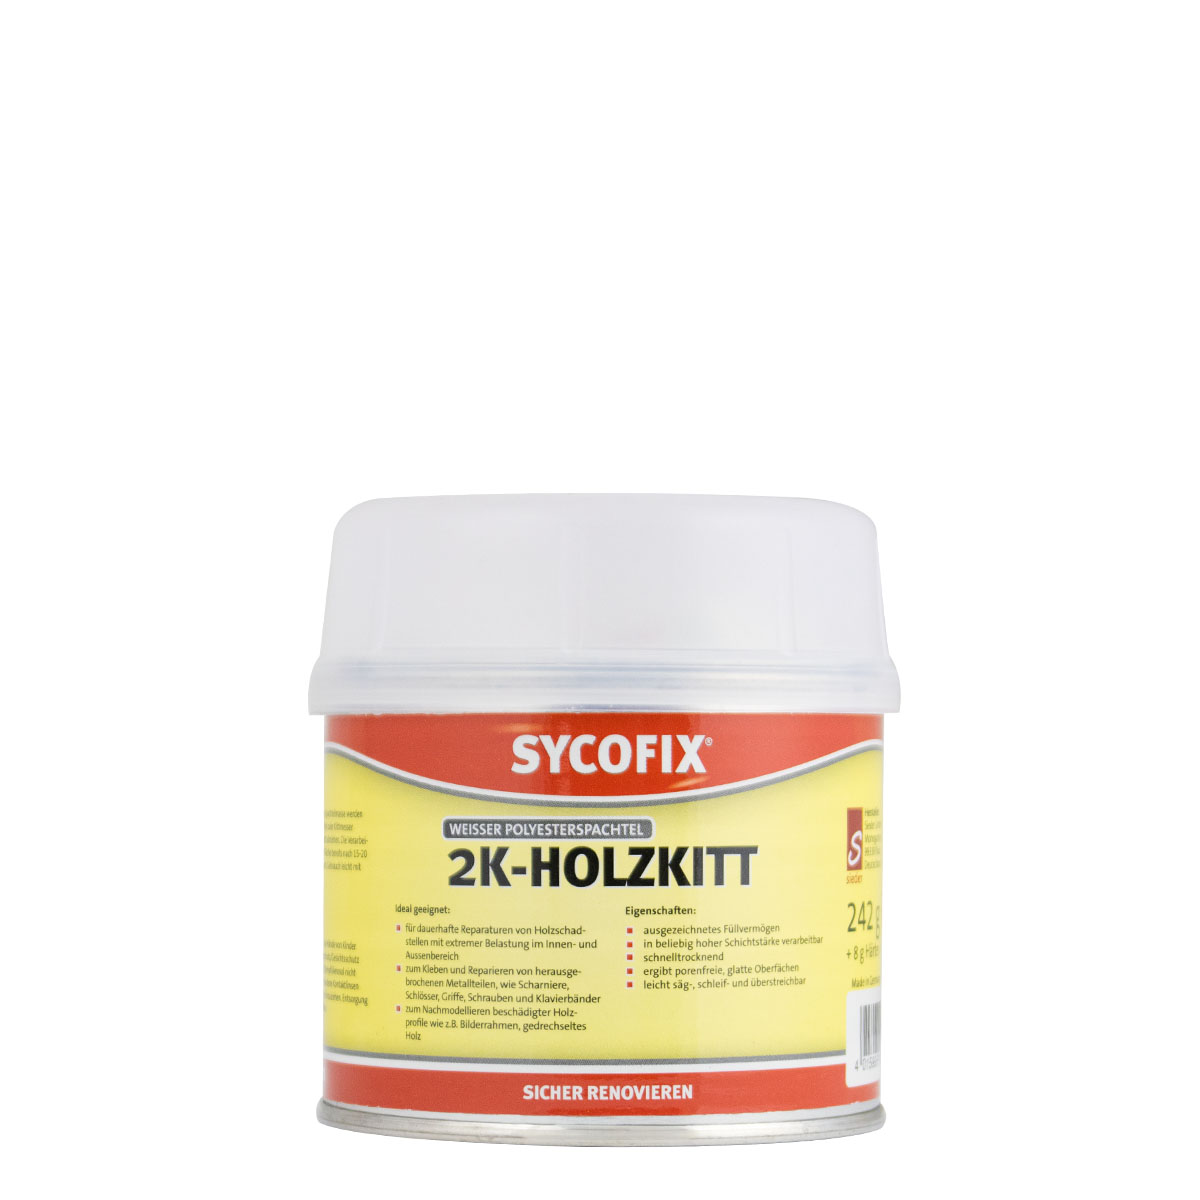 Sycofix 2K-Holzkitt 250g weiß, Polyesterspachtel